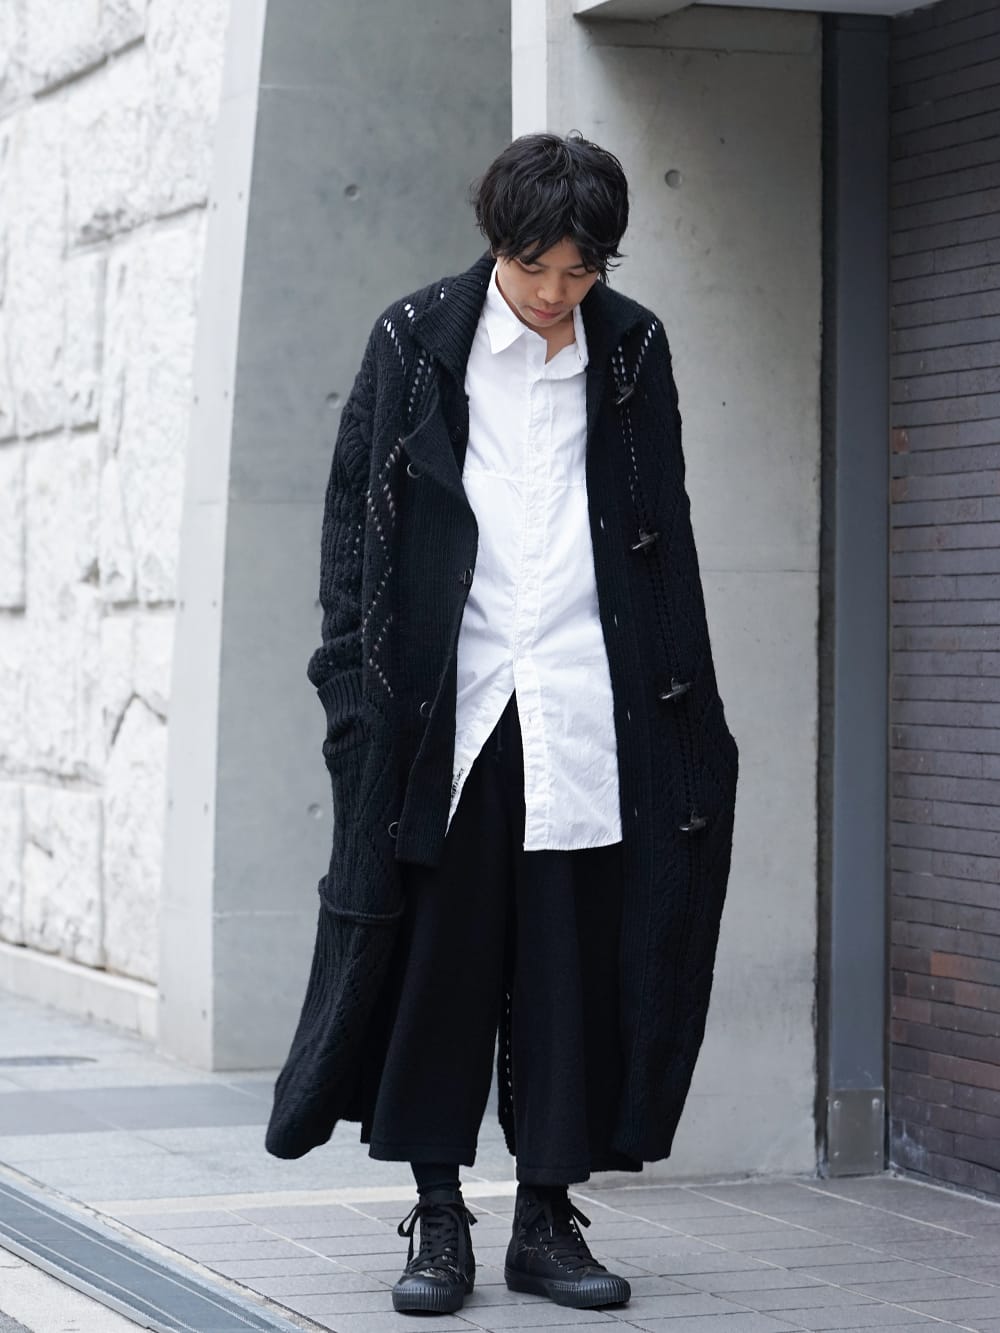 Yohji Yamamoto - ヨウジヤマモト 19-20AW Style featuring a knitted